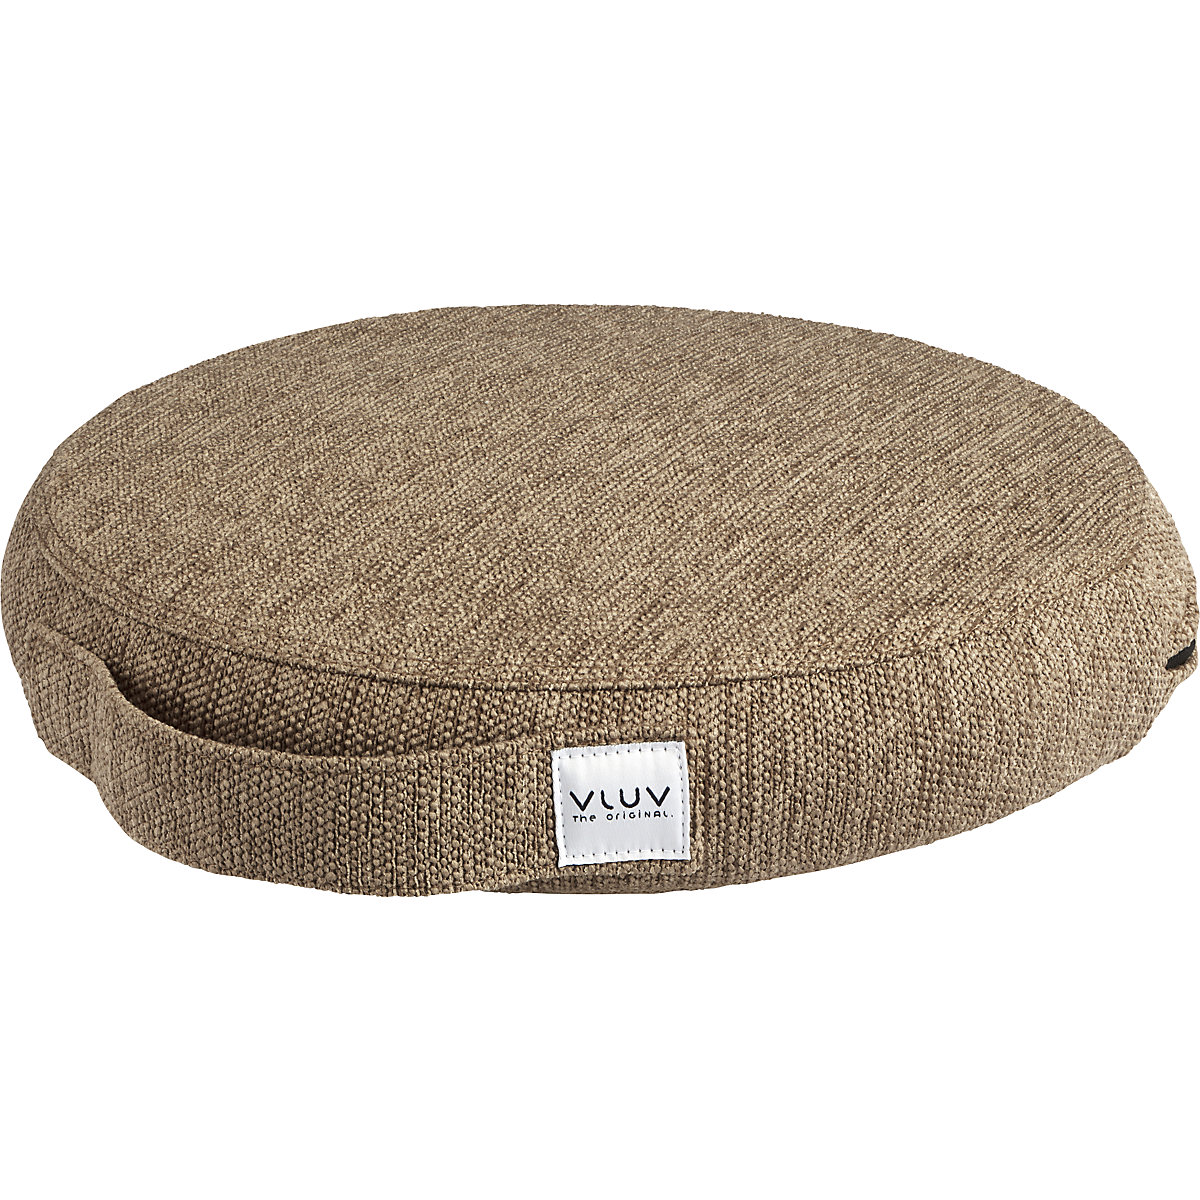 Jastuk za ravnotežu PIL&PED STOV – VLUV, s tekstilnom presvlakom, Ø 360 mm, u macchiato boji-8